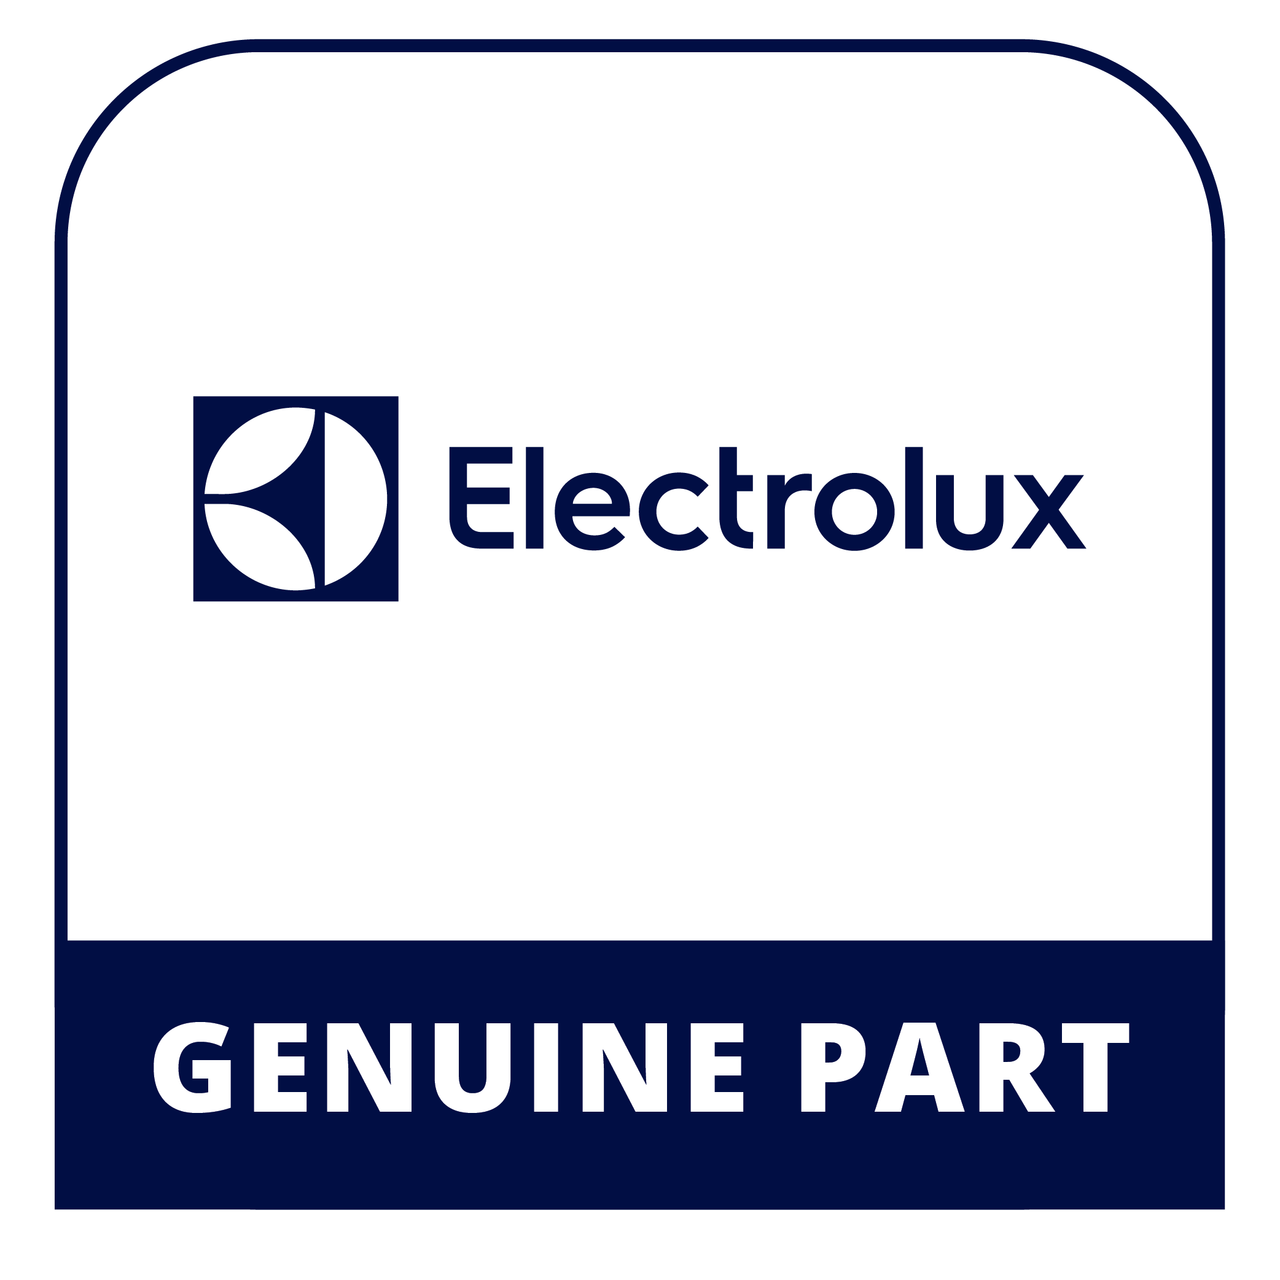 Frigidaire - Electrolux 318005227 Switch - Genuine Electrolux Part